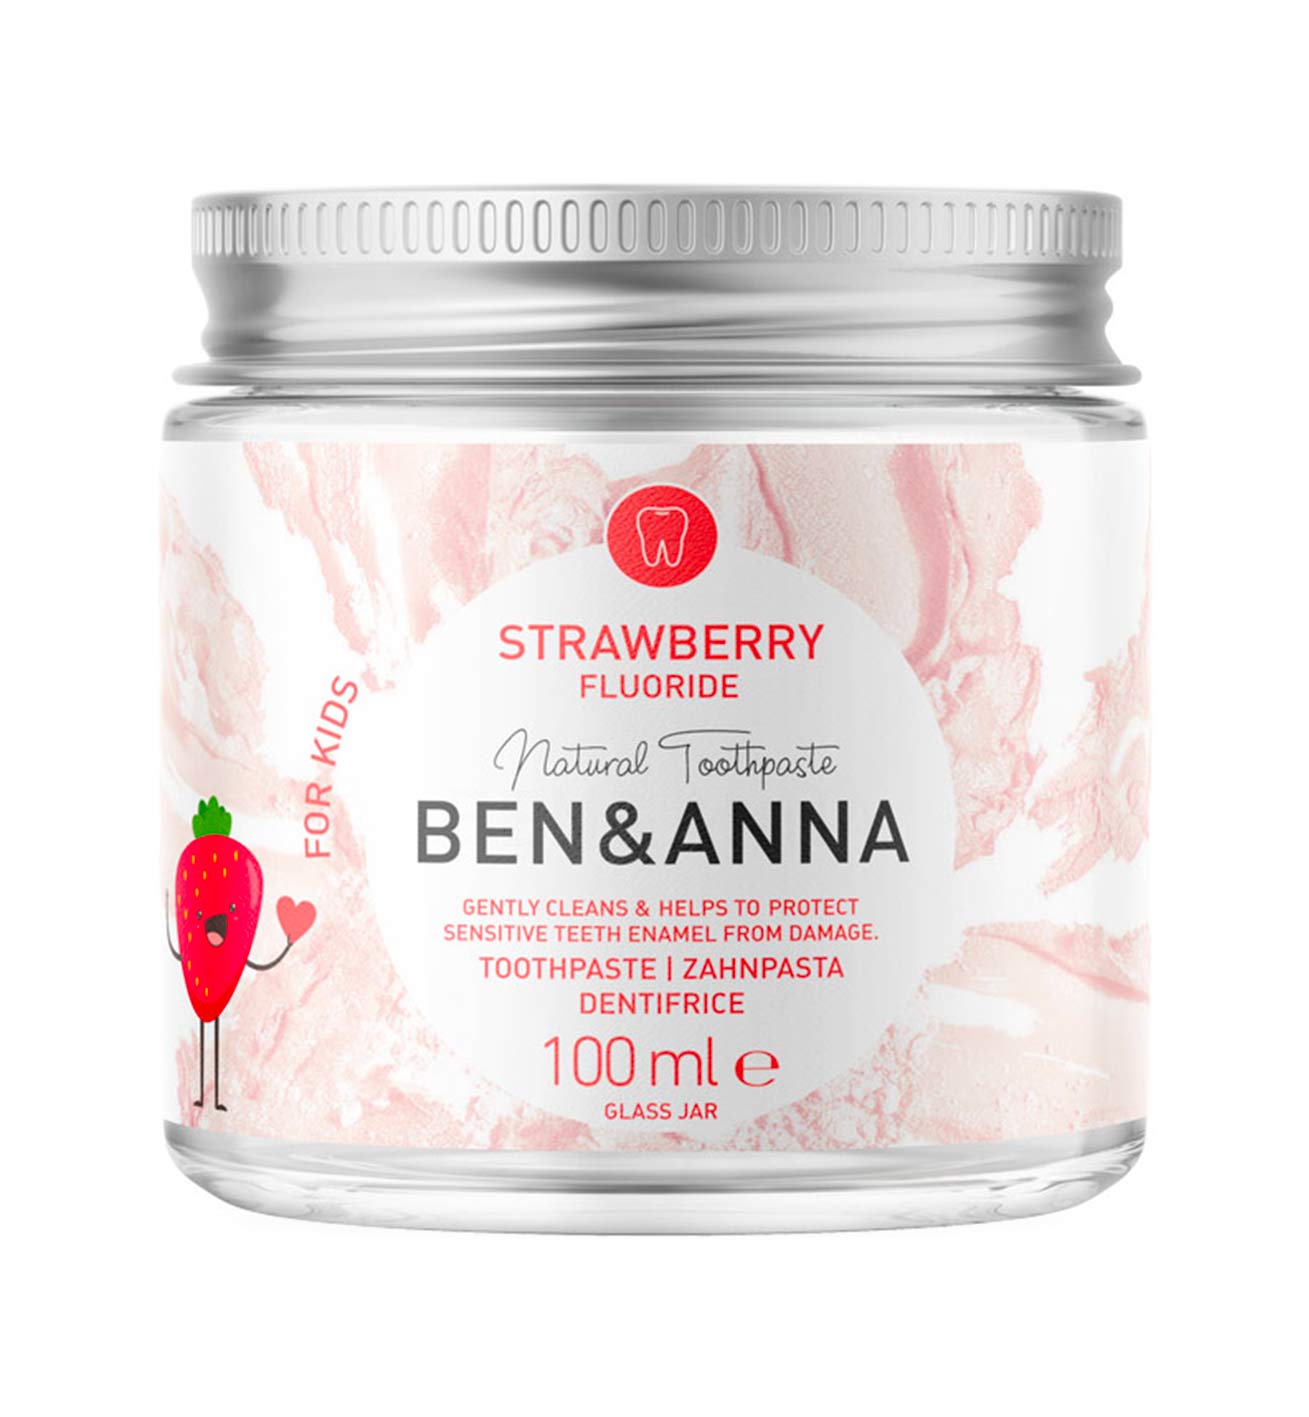 Ben&Anna – Pasta Dentifricia Strawberry con Fluoro kids